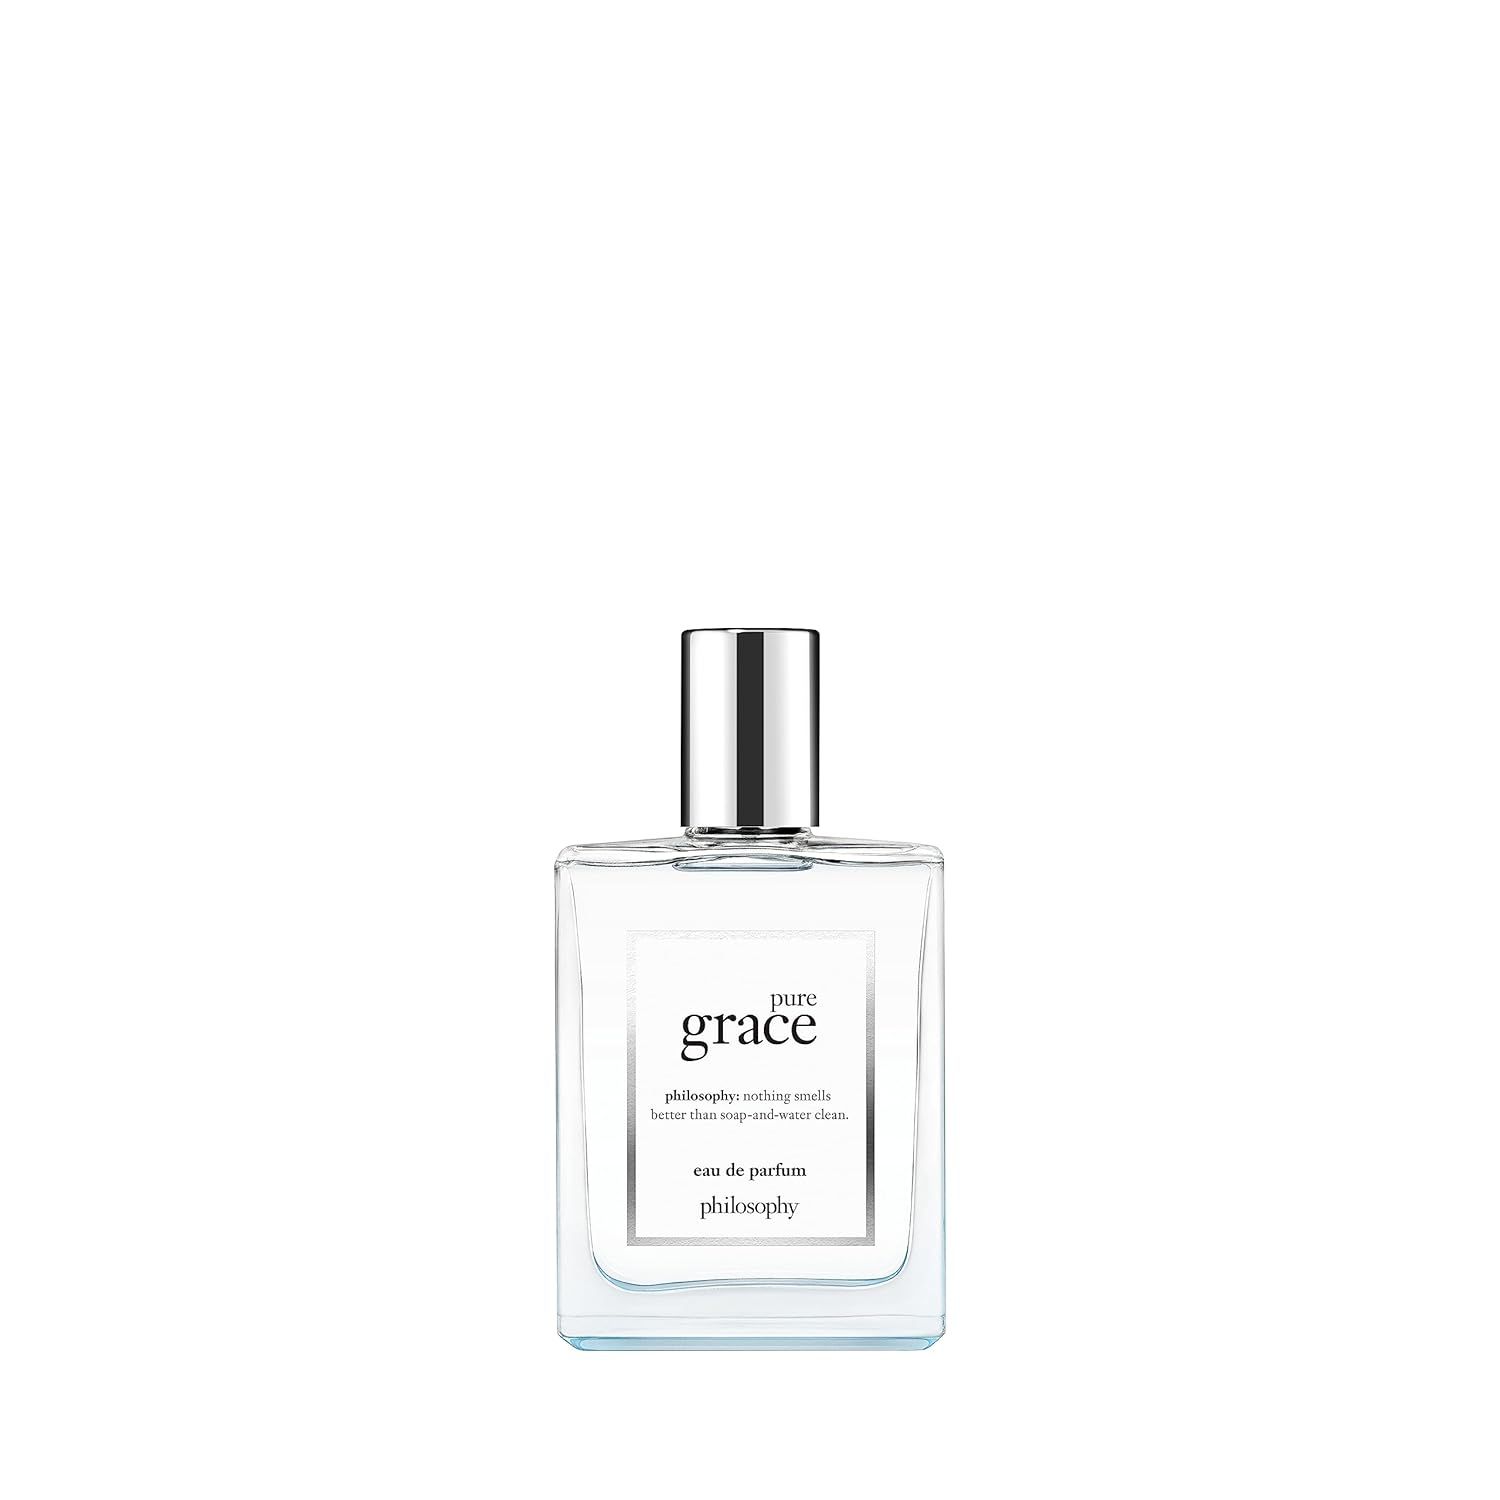 philosophy pure grace eau de parfum, 2 oz. | Amazon (US)